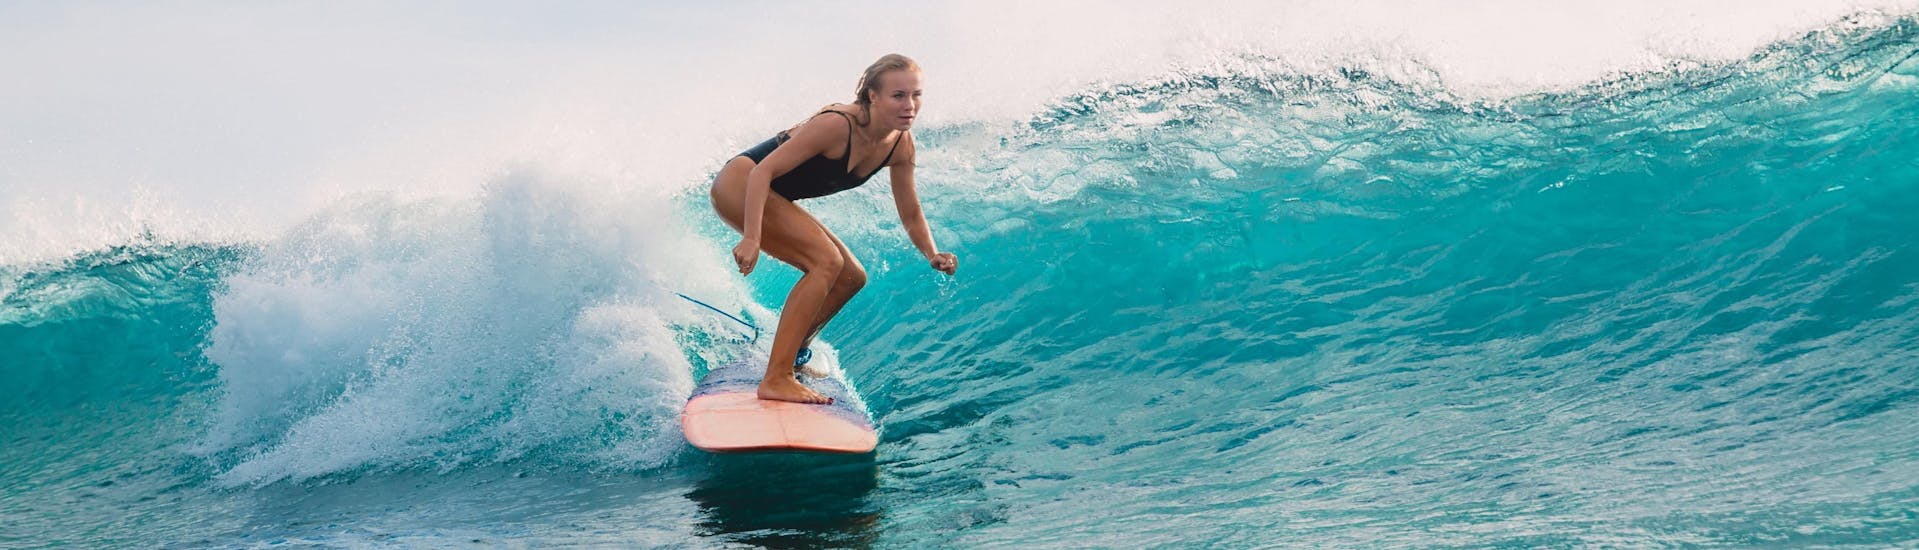 Playa de Somo: Een jonge vrouw leert surfen.